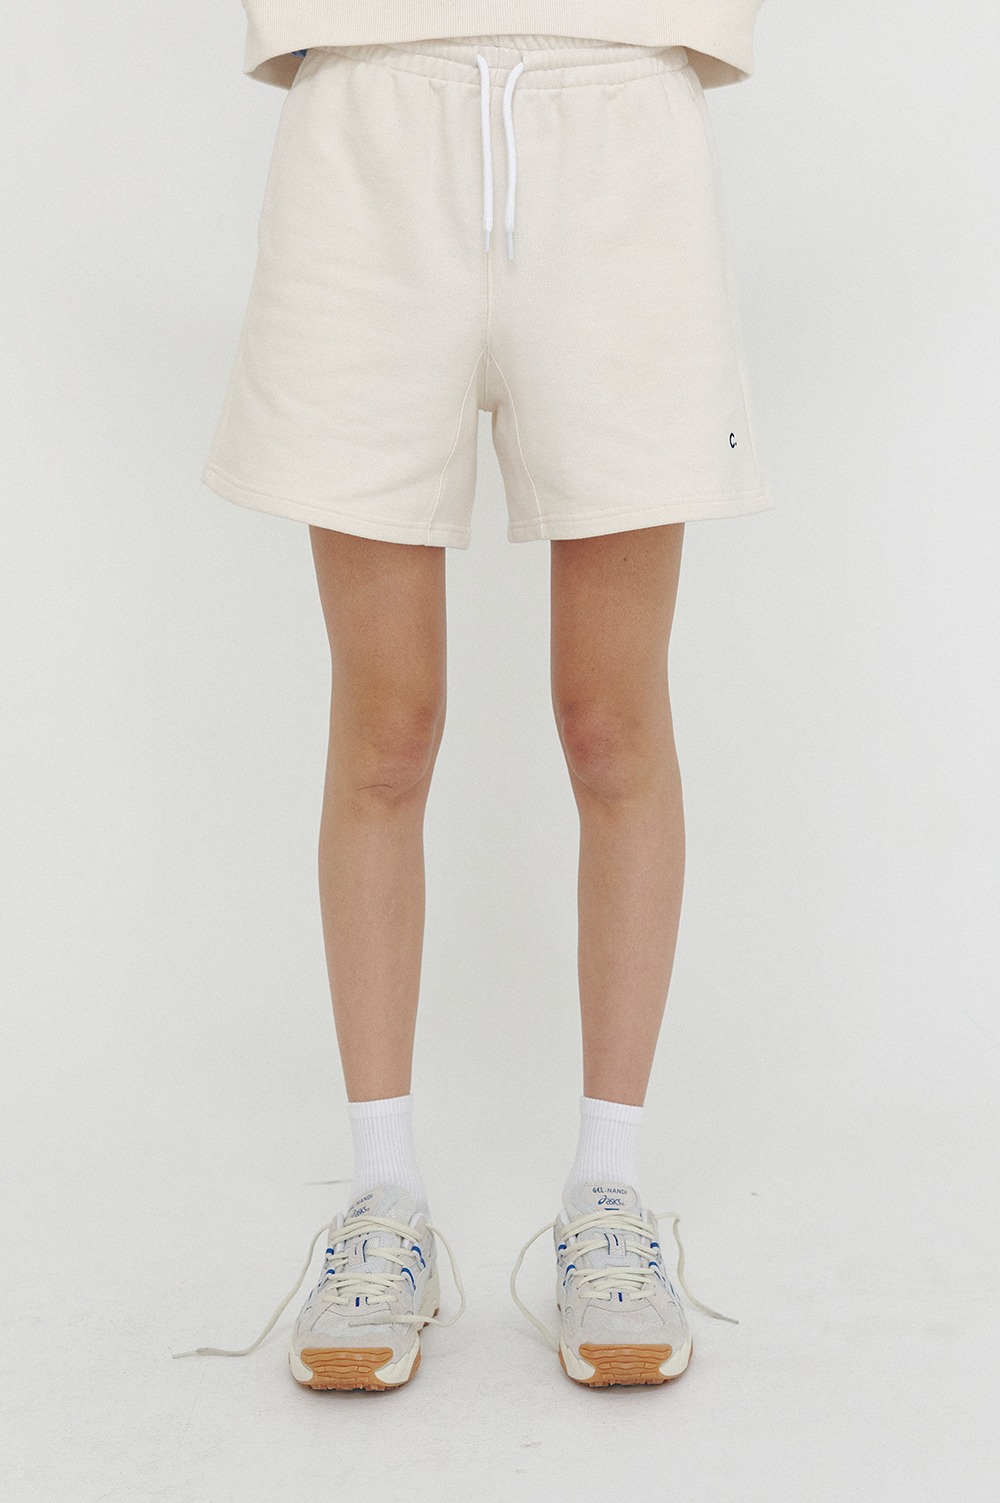 clove - [SS21 Clove] Active Short Pants_Women Light Beige